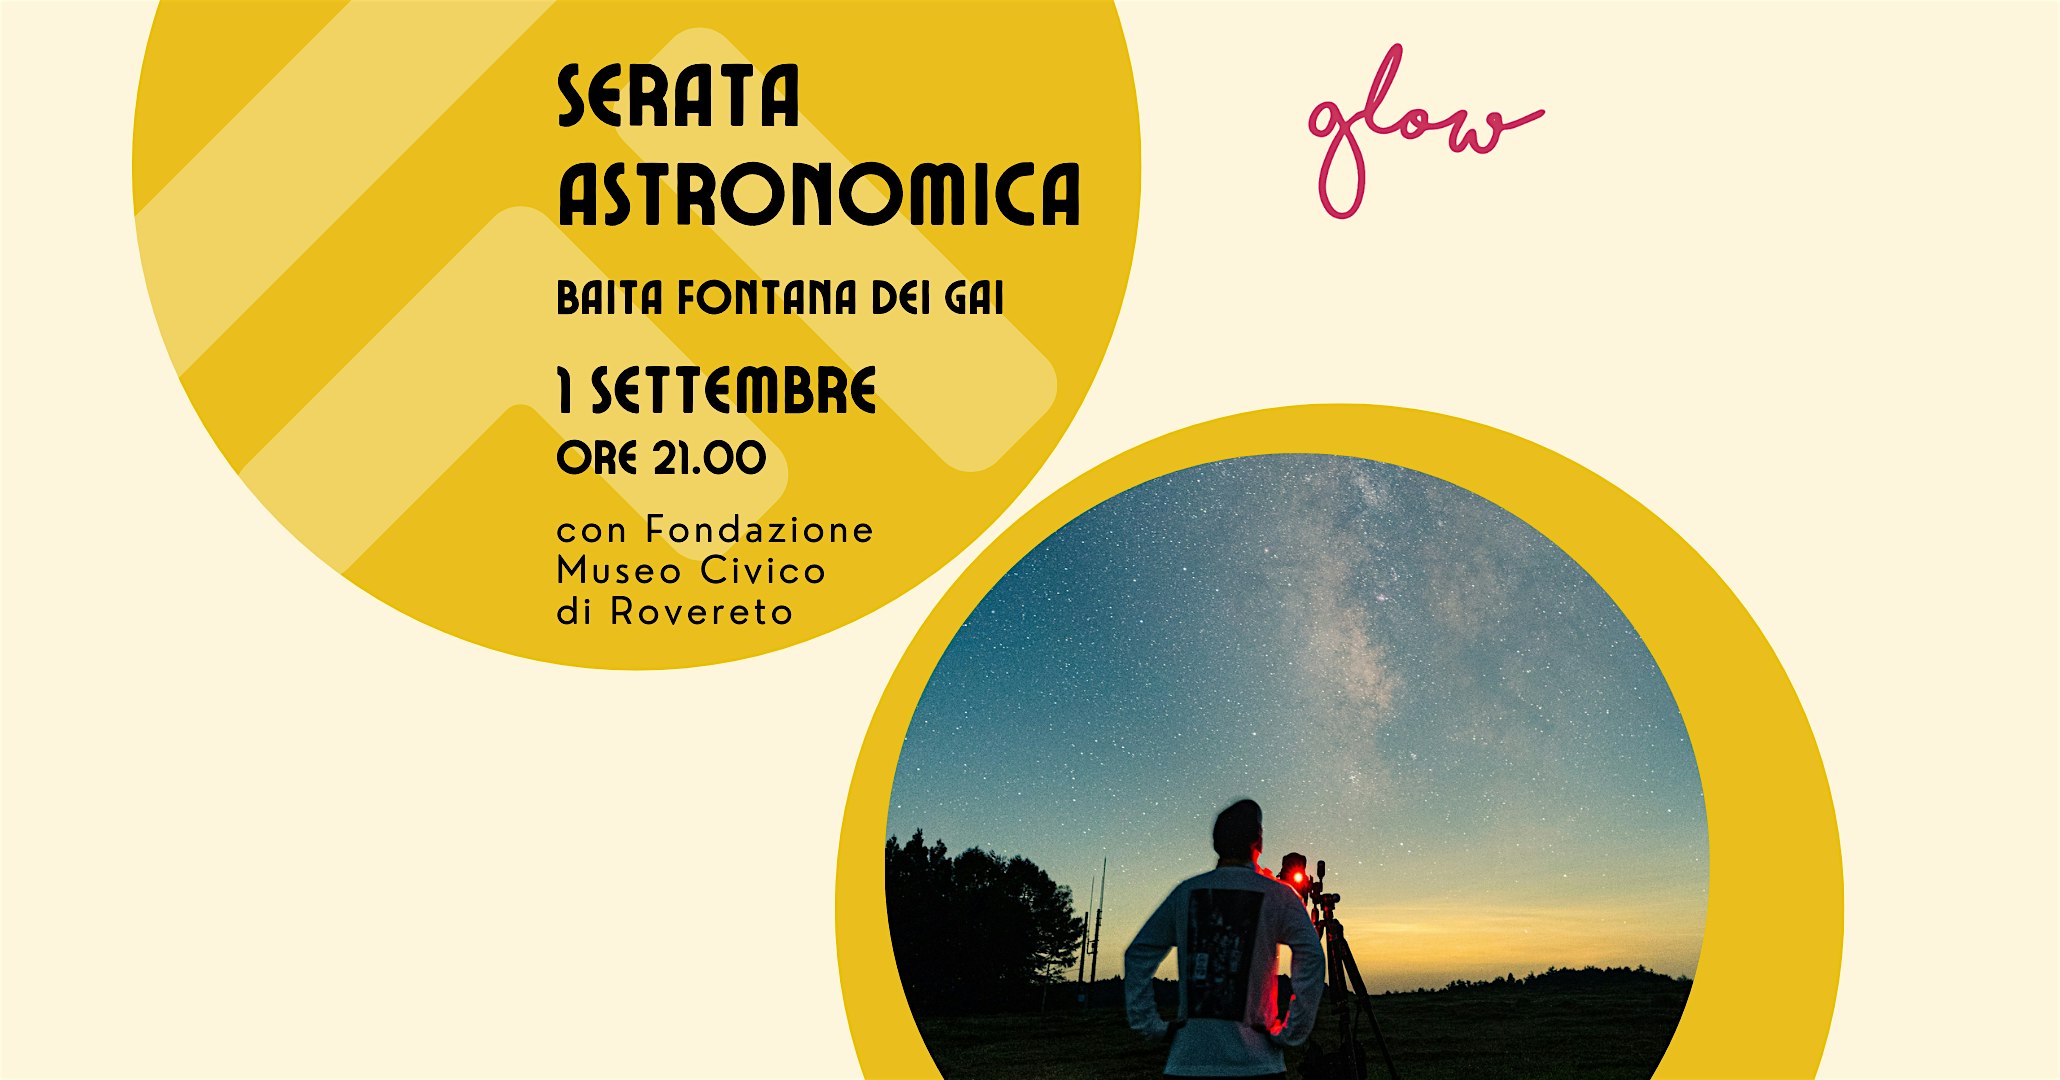 Serata astronomica a cura della Fondazione Museo Civico di Rovereto